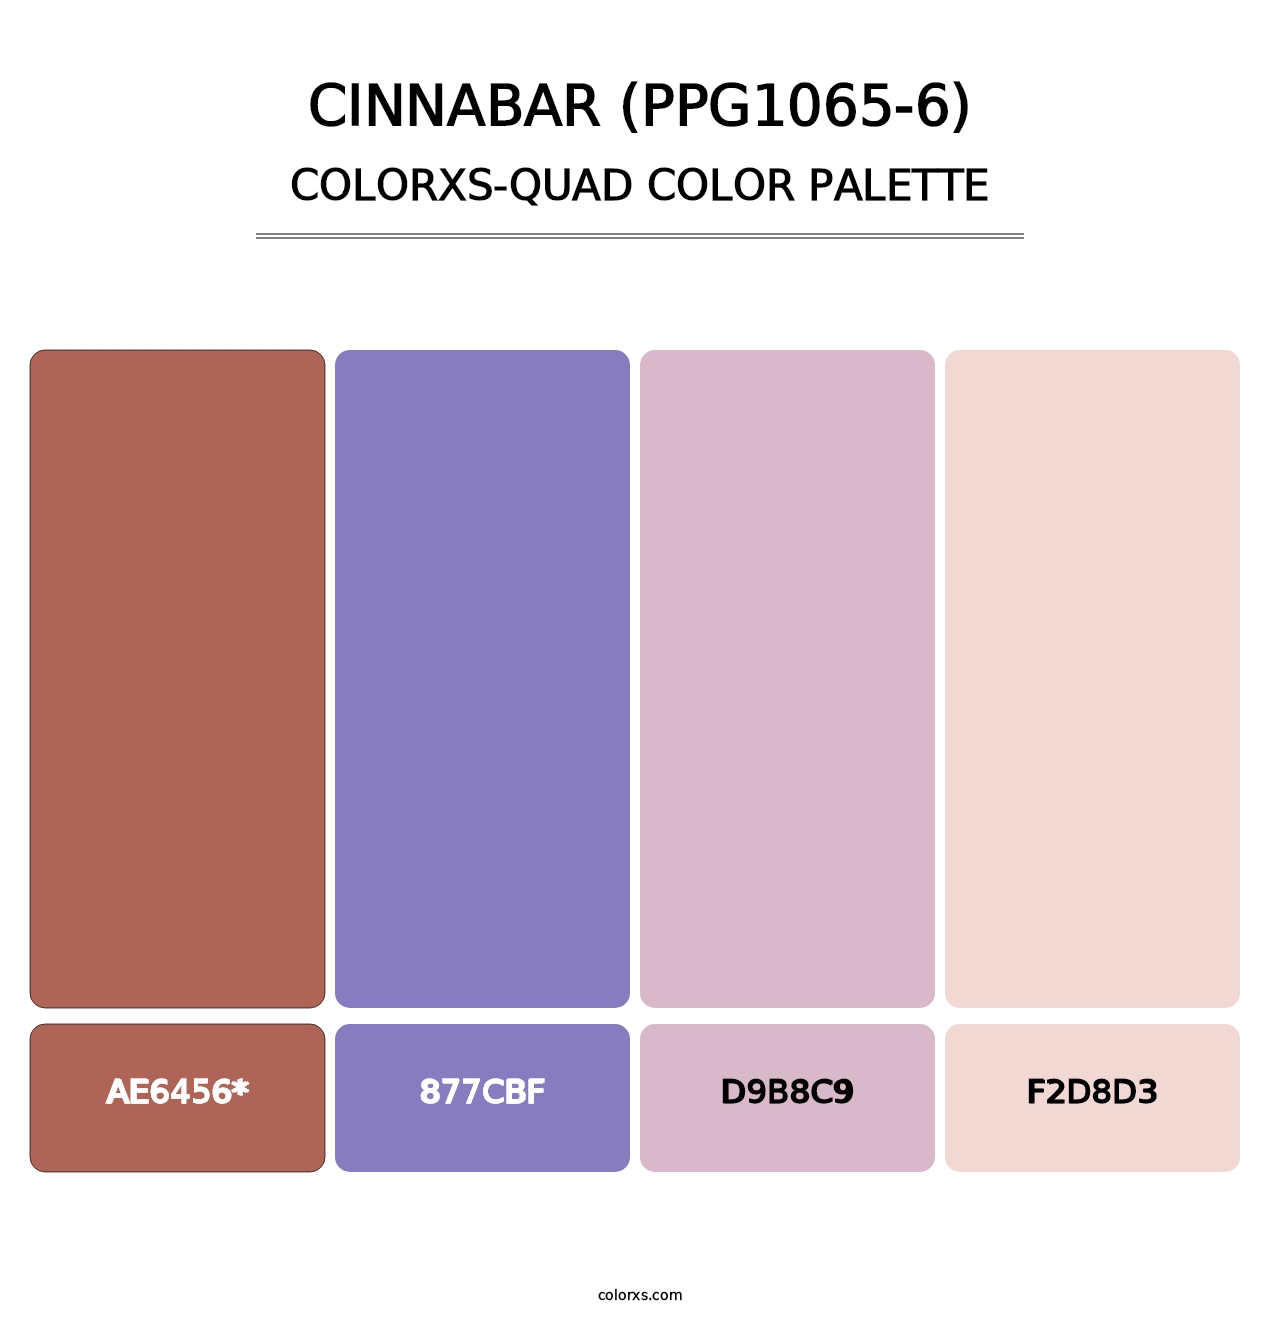 Cinnabar (PPG1065-6) - Colorxs Quad Palette